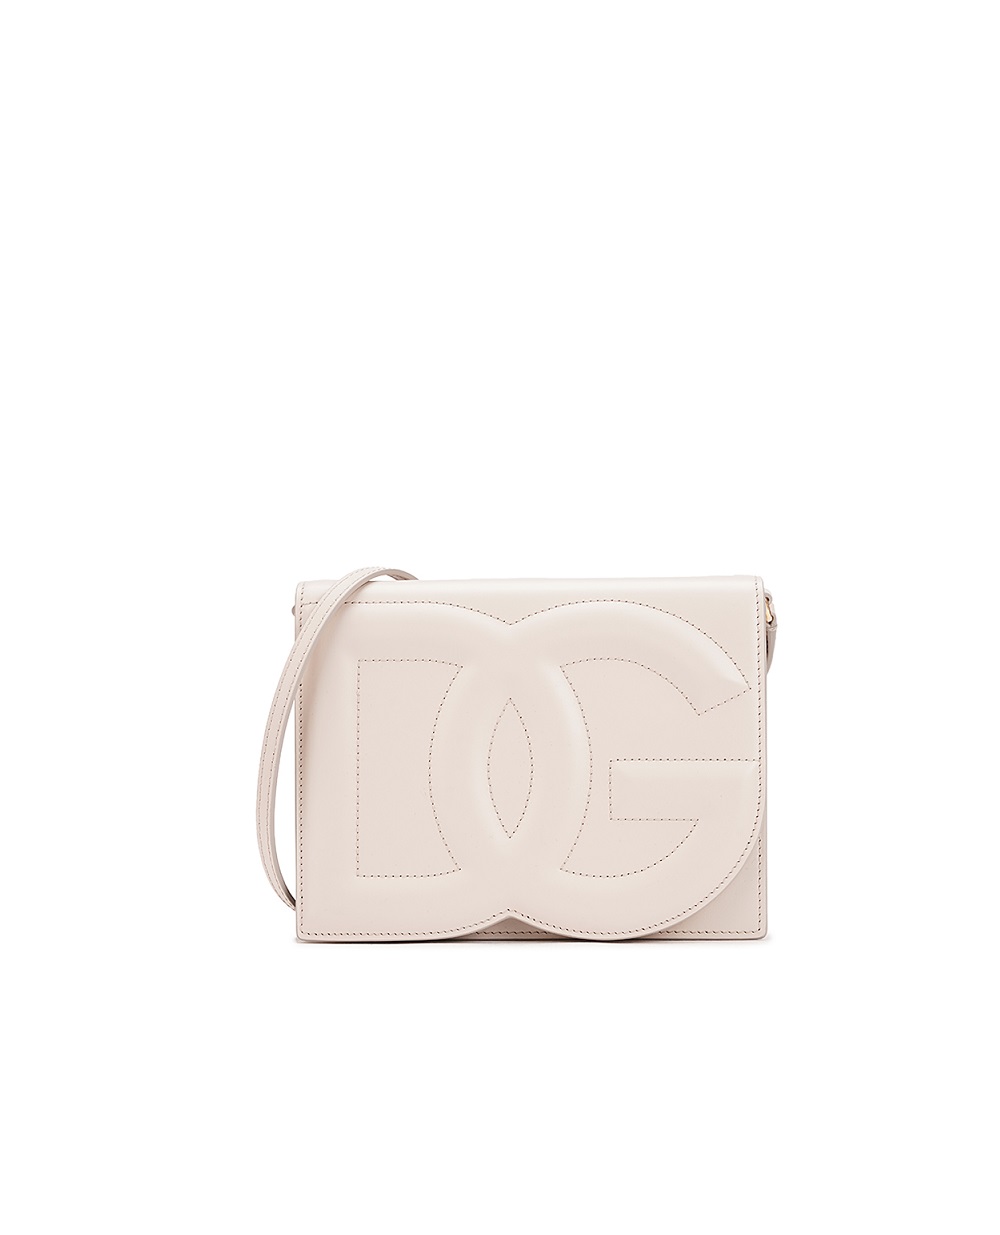 Кожаная сумка DG Logo Small Dolce&Gabbana BB7287-AW576, бежевый цвет • Купить в интернет-магазине Kameron